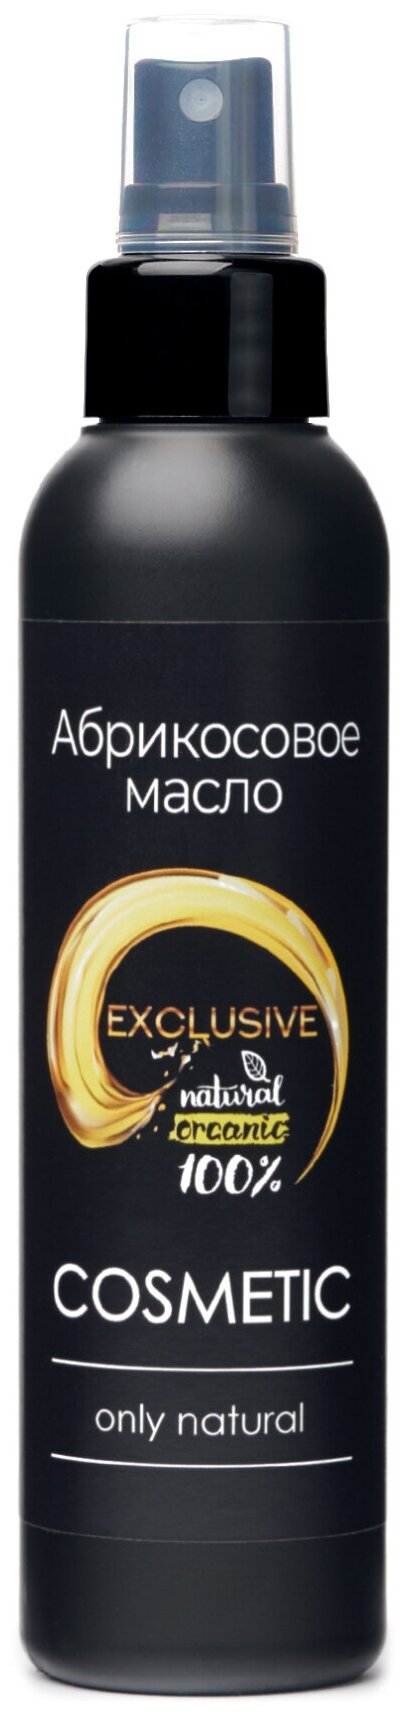 COSMETIC Масло абрикосовое 100% натуральное для волос лица и тела 150мл